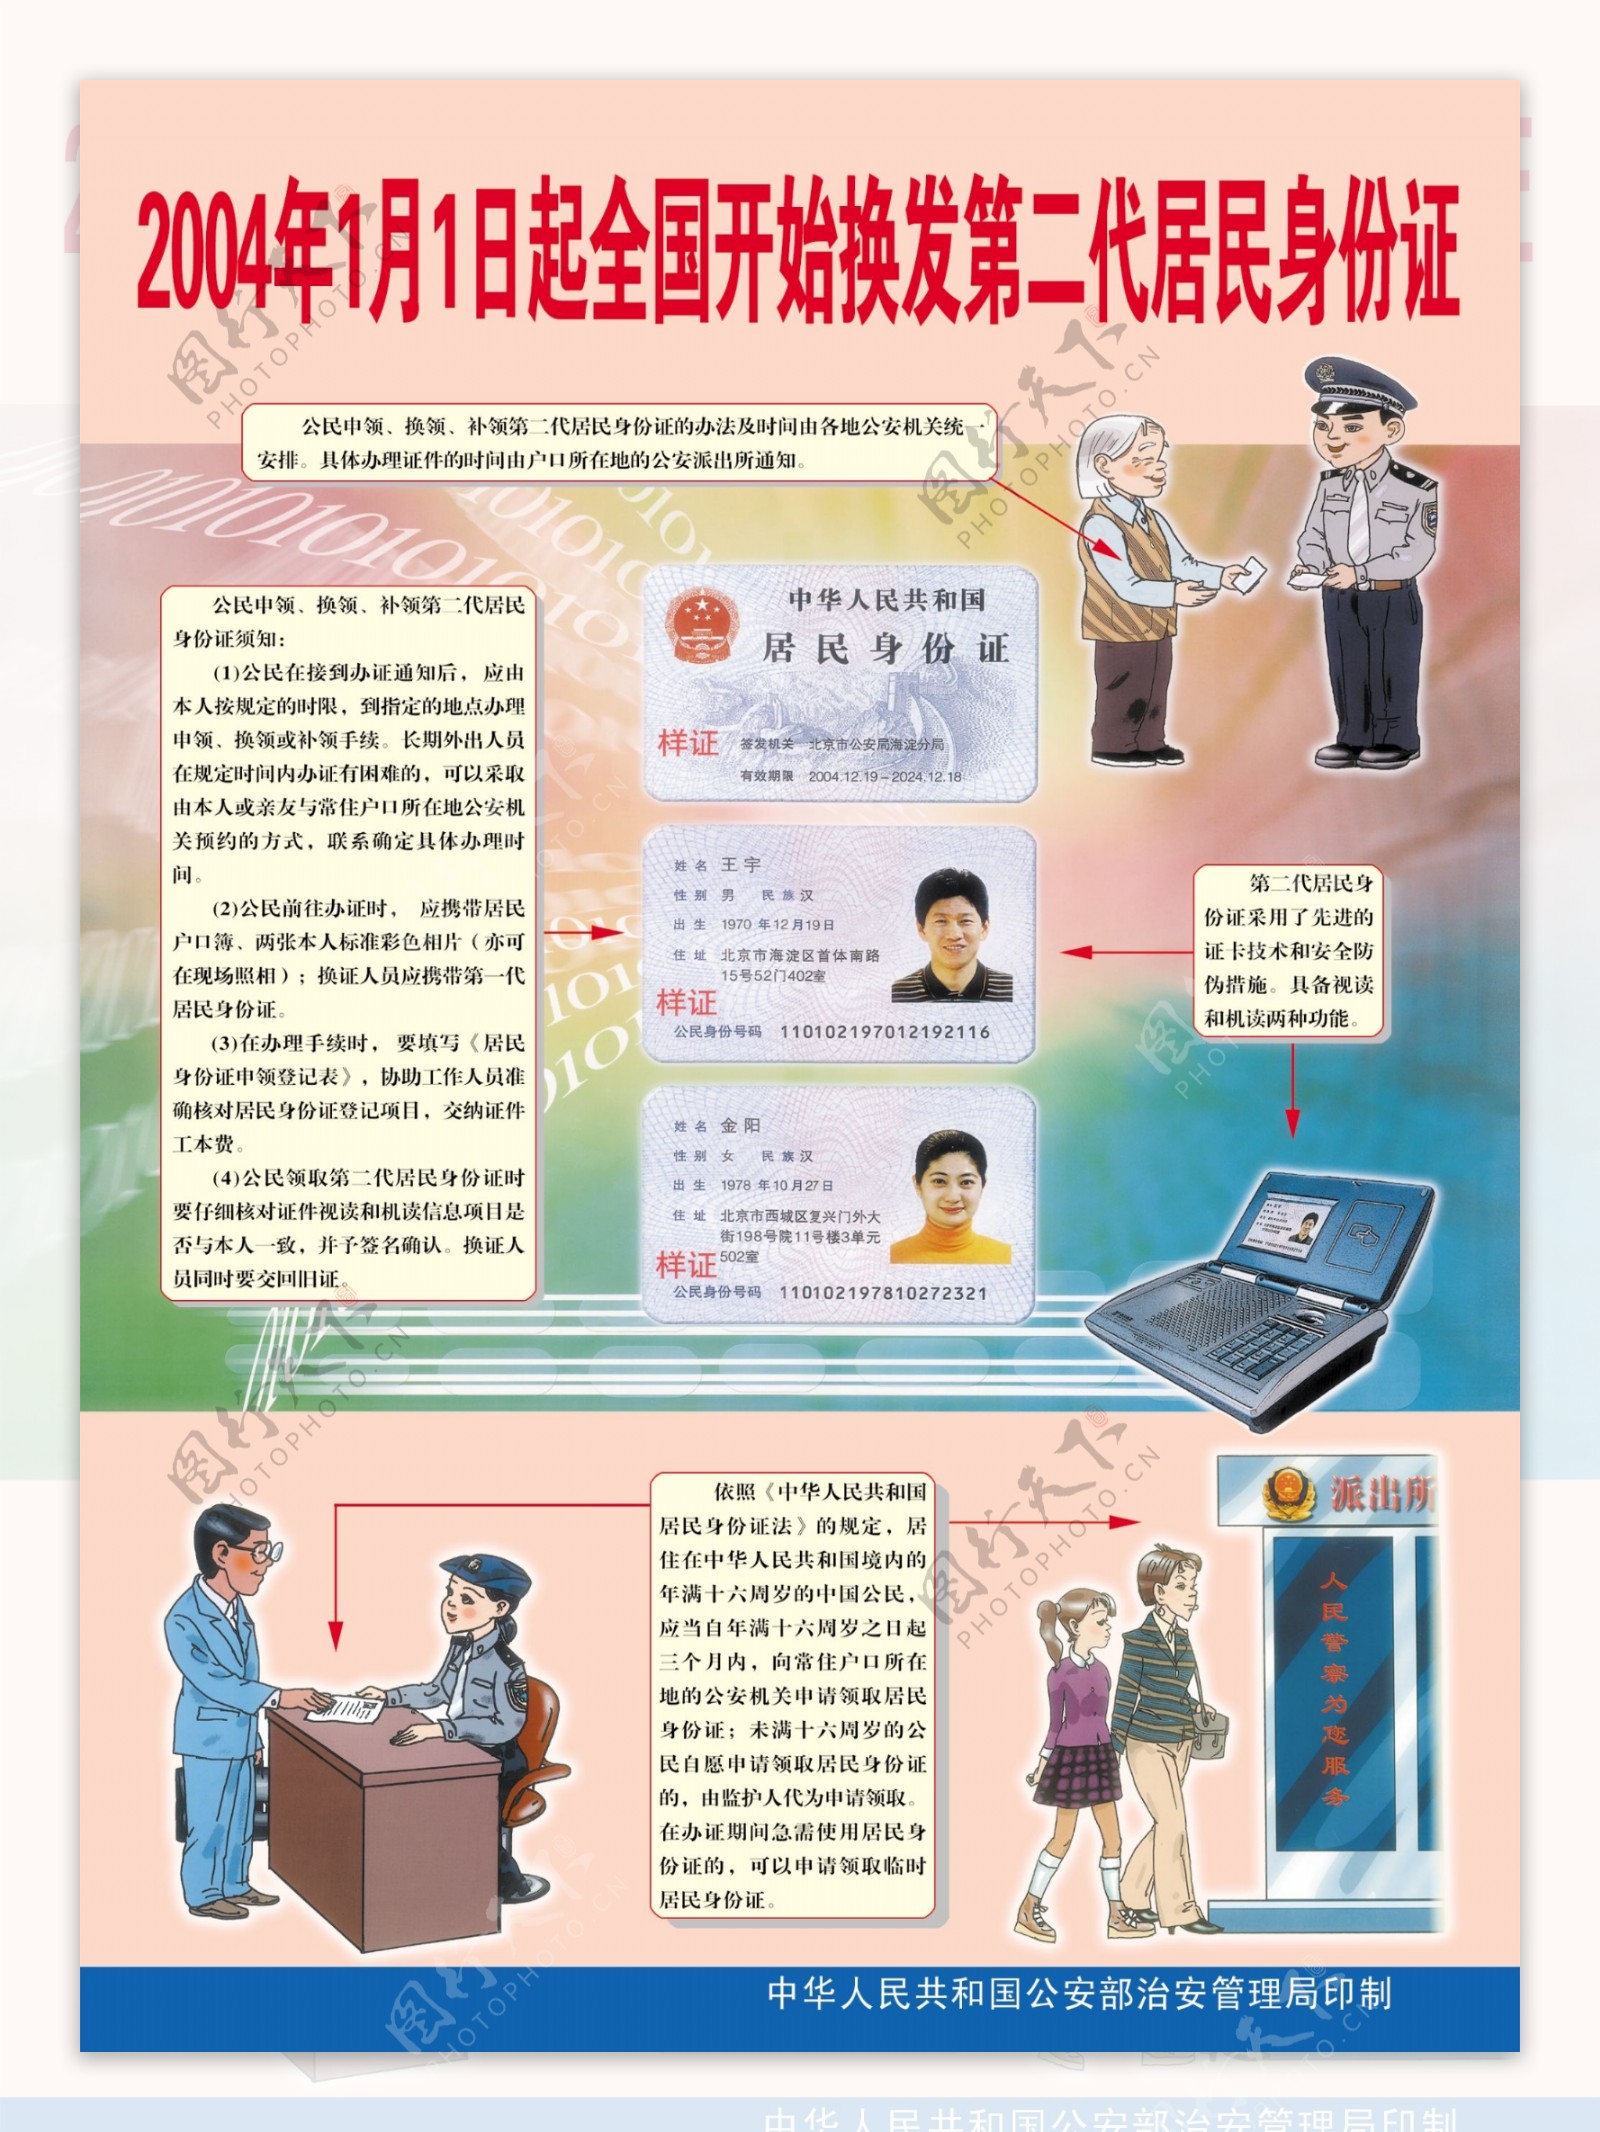 居民身份证展板图片